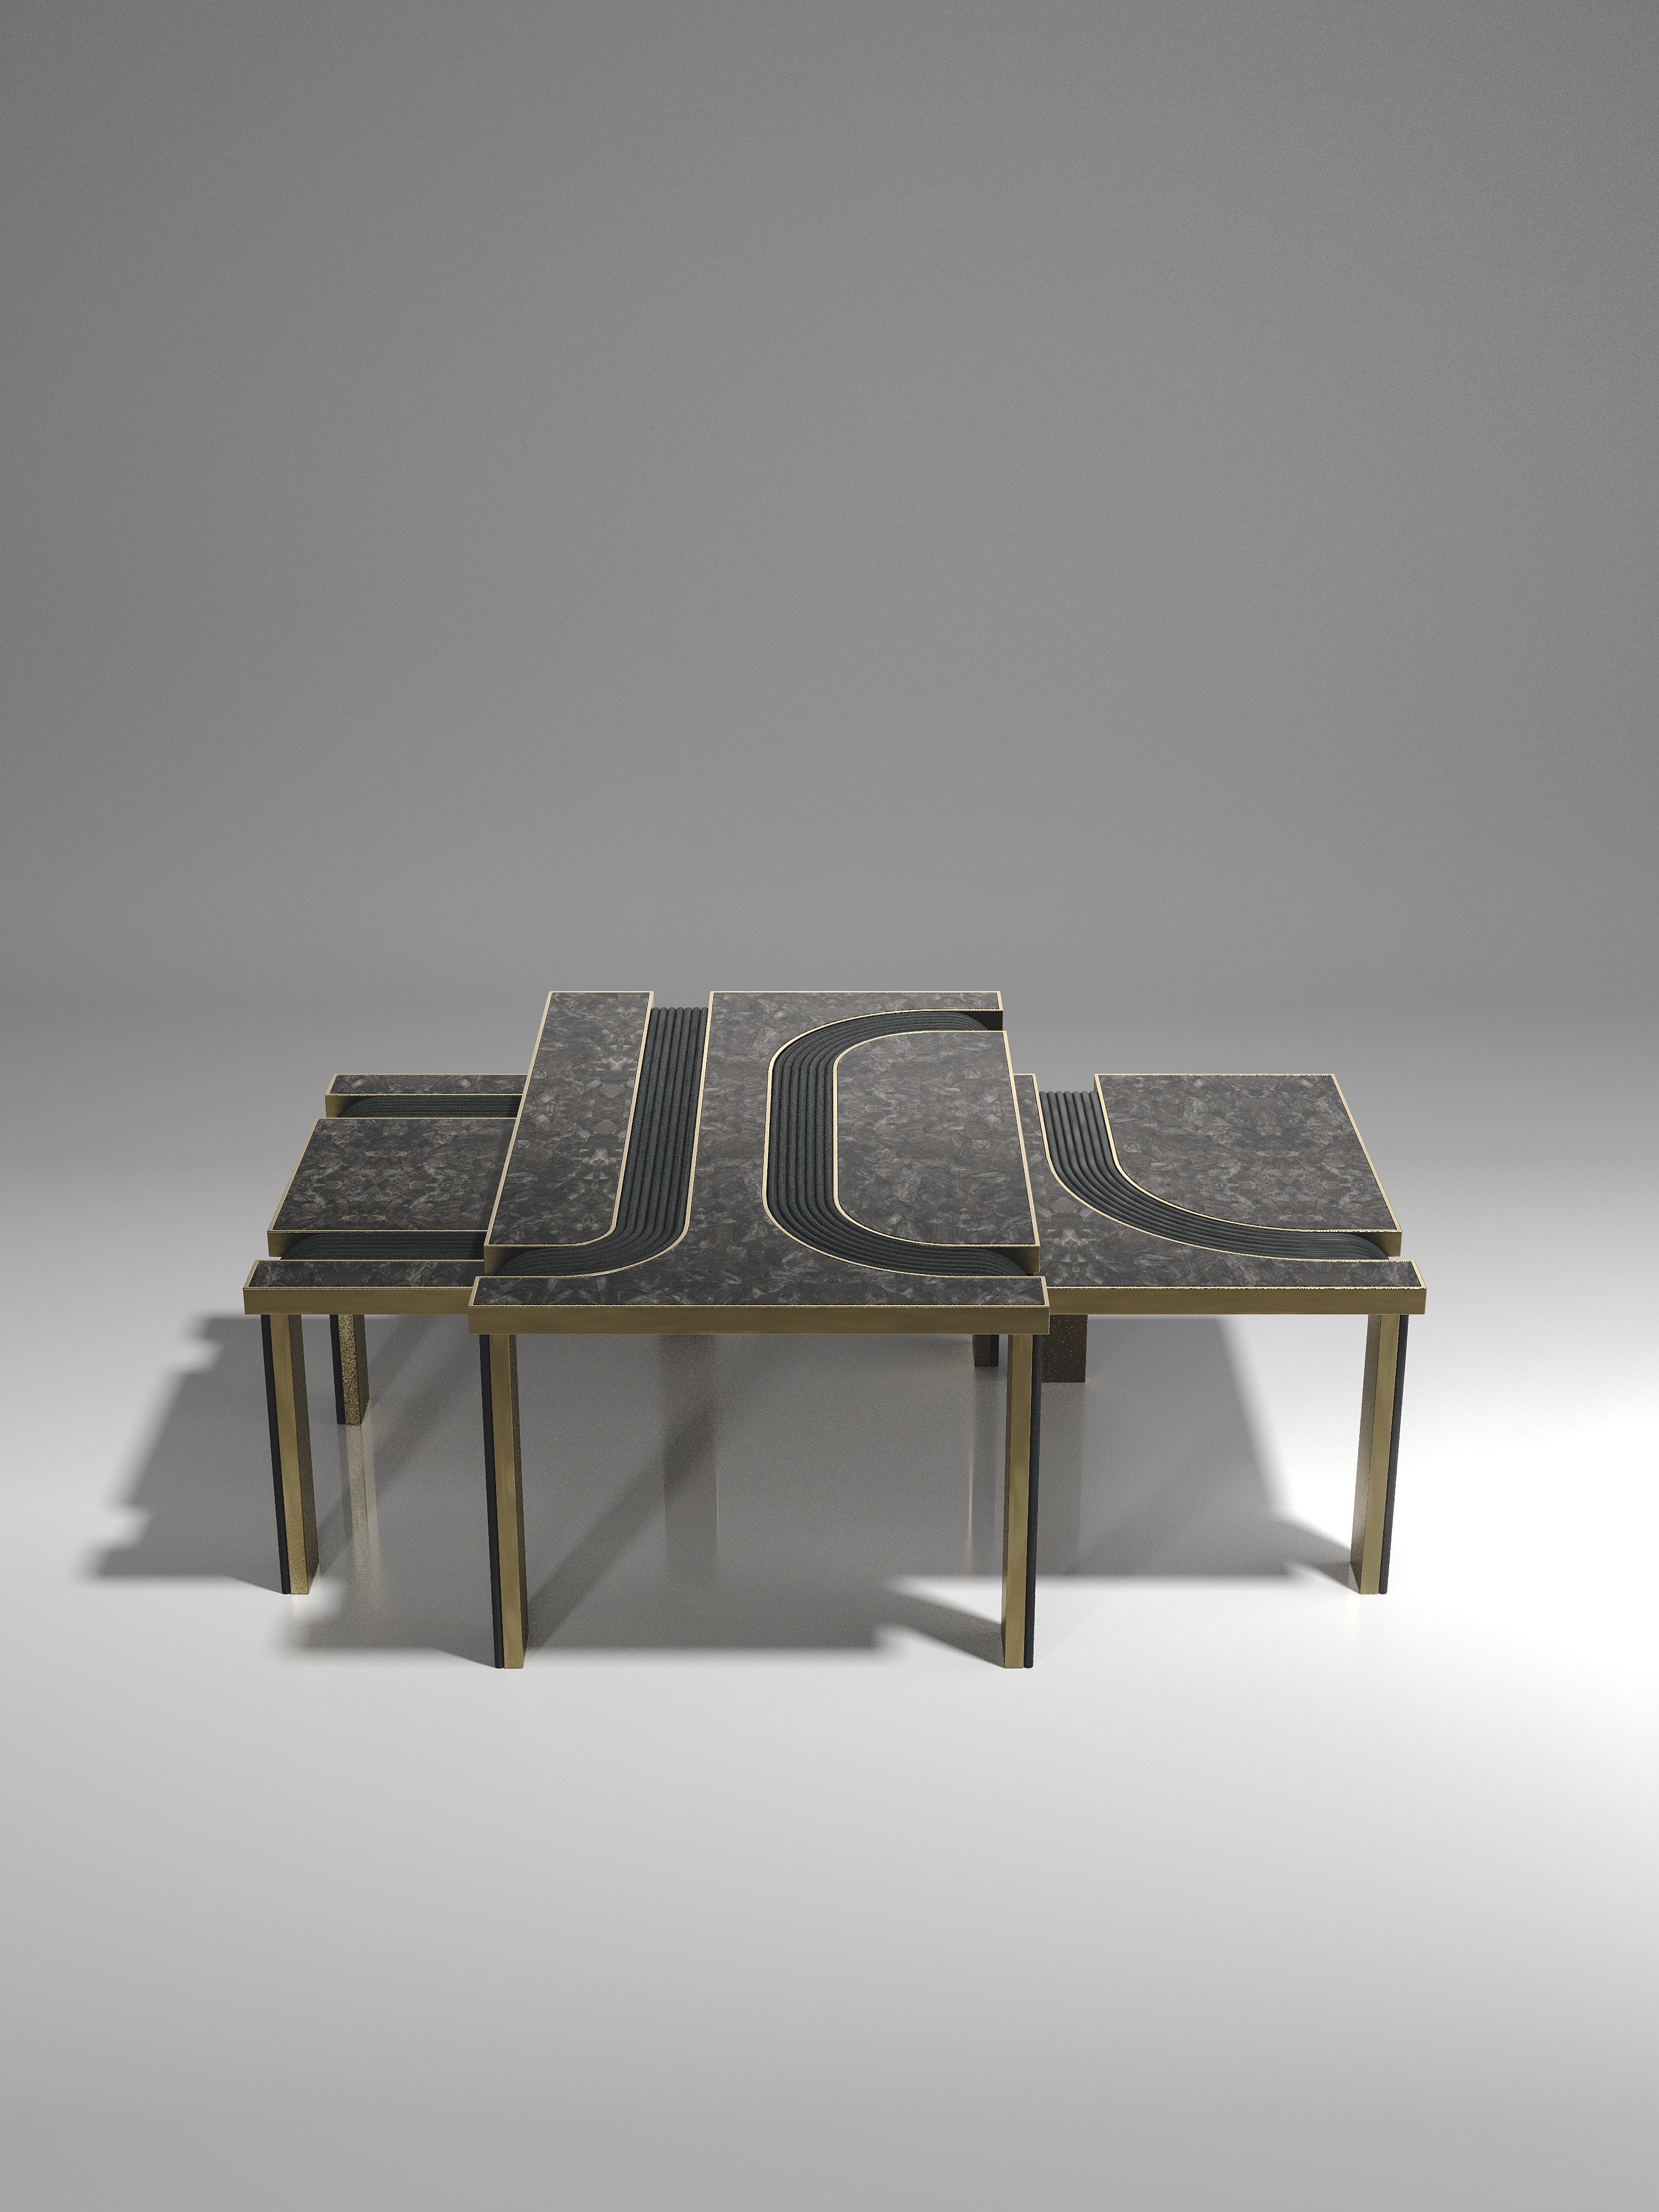 L'ensemble de 2 tables basses gigognes Licol de R&Y Augousti fait partie du lancement de leur nouvelle capsule de rotin. Les pièces explorent l'ADN emblématique de la marque, qui consiste à transformer l'artisanat du vieux continent en un produit